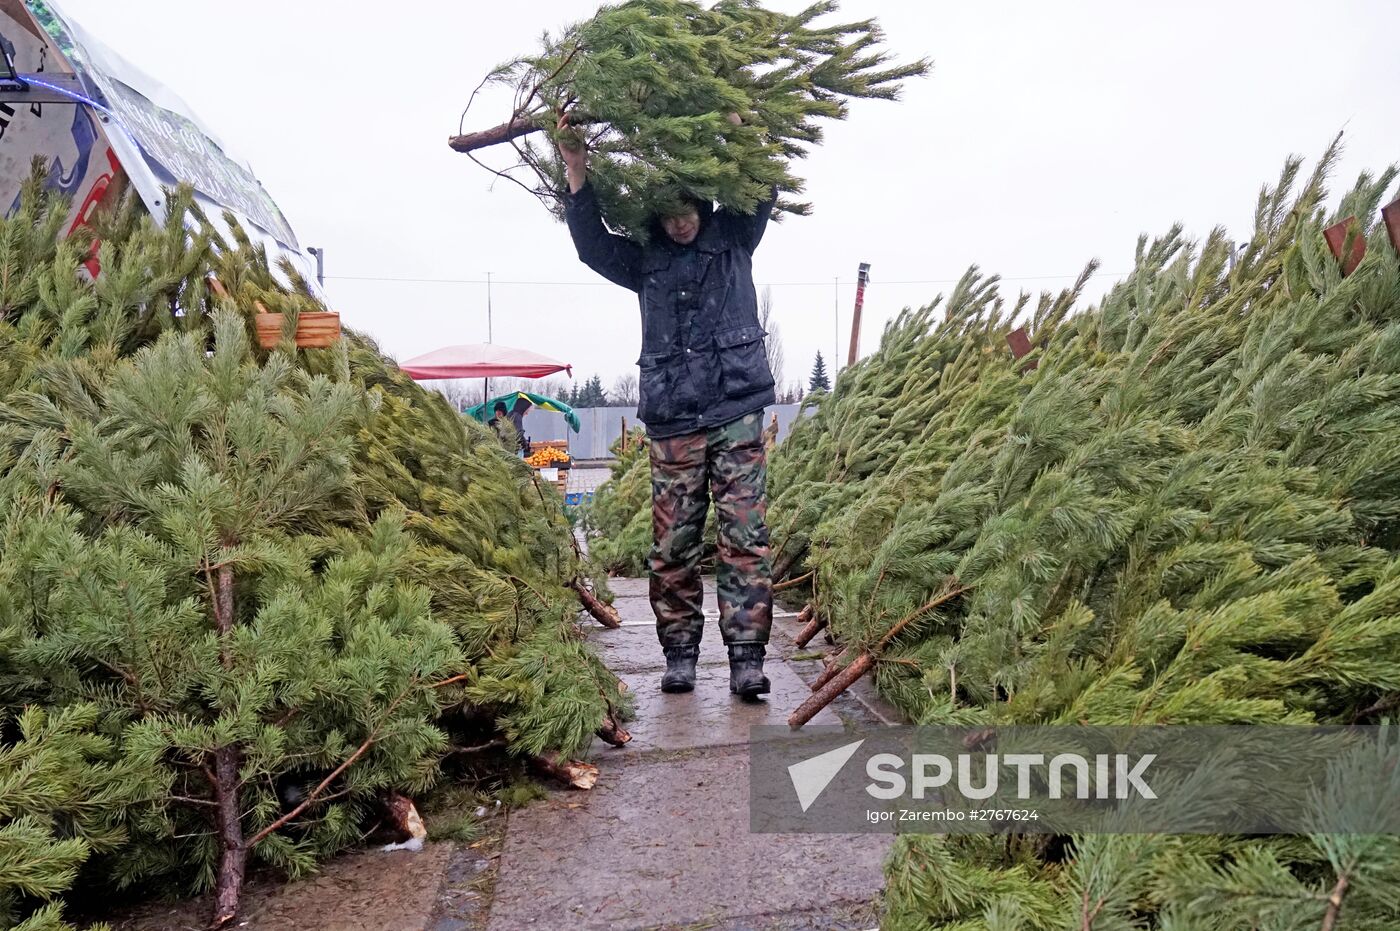 Fir-tree sales in Kaliningrad